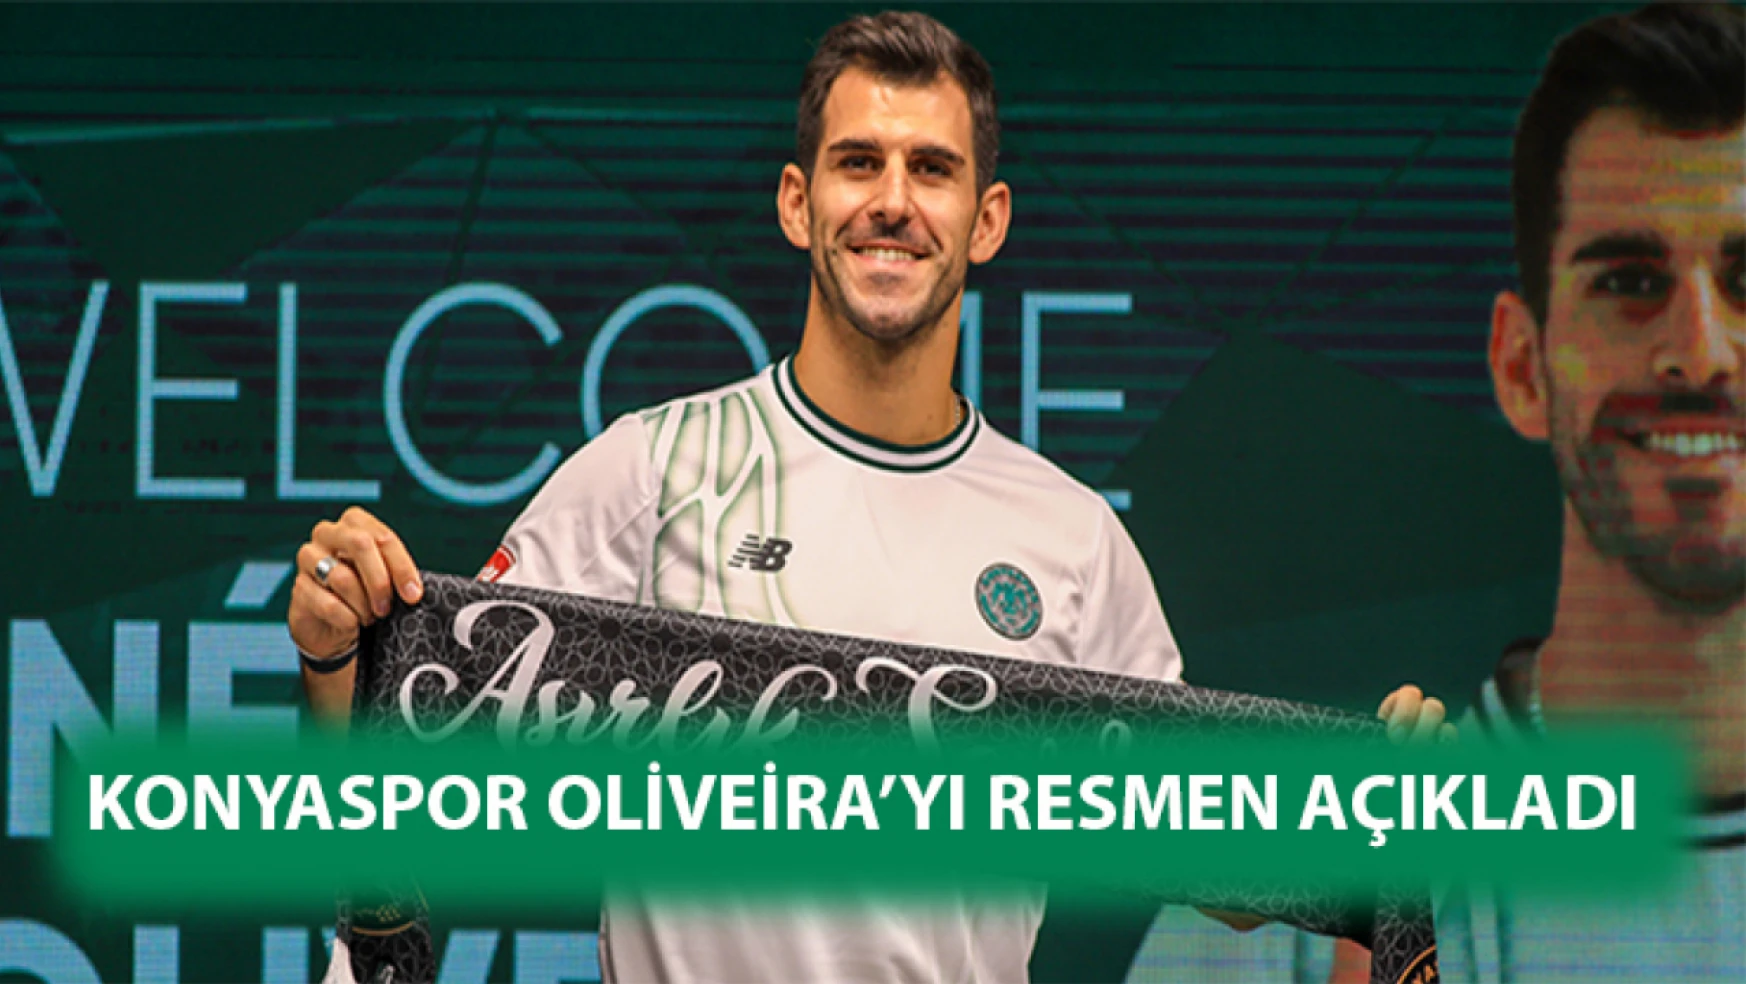 Konyaspor Oliveira'yı resmen açıkladı